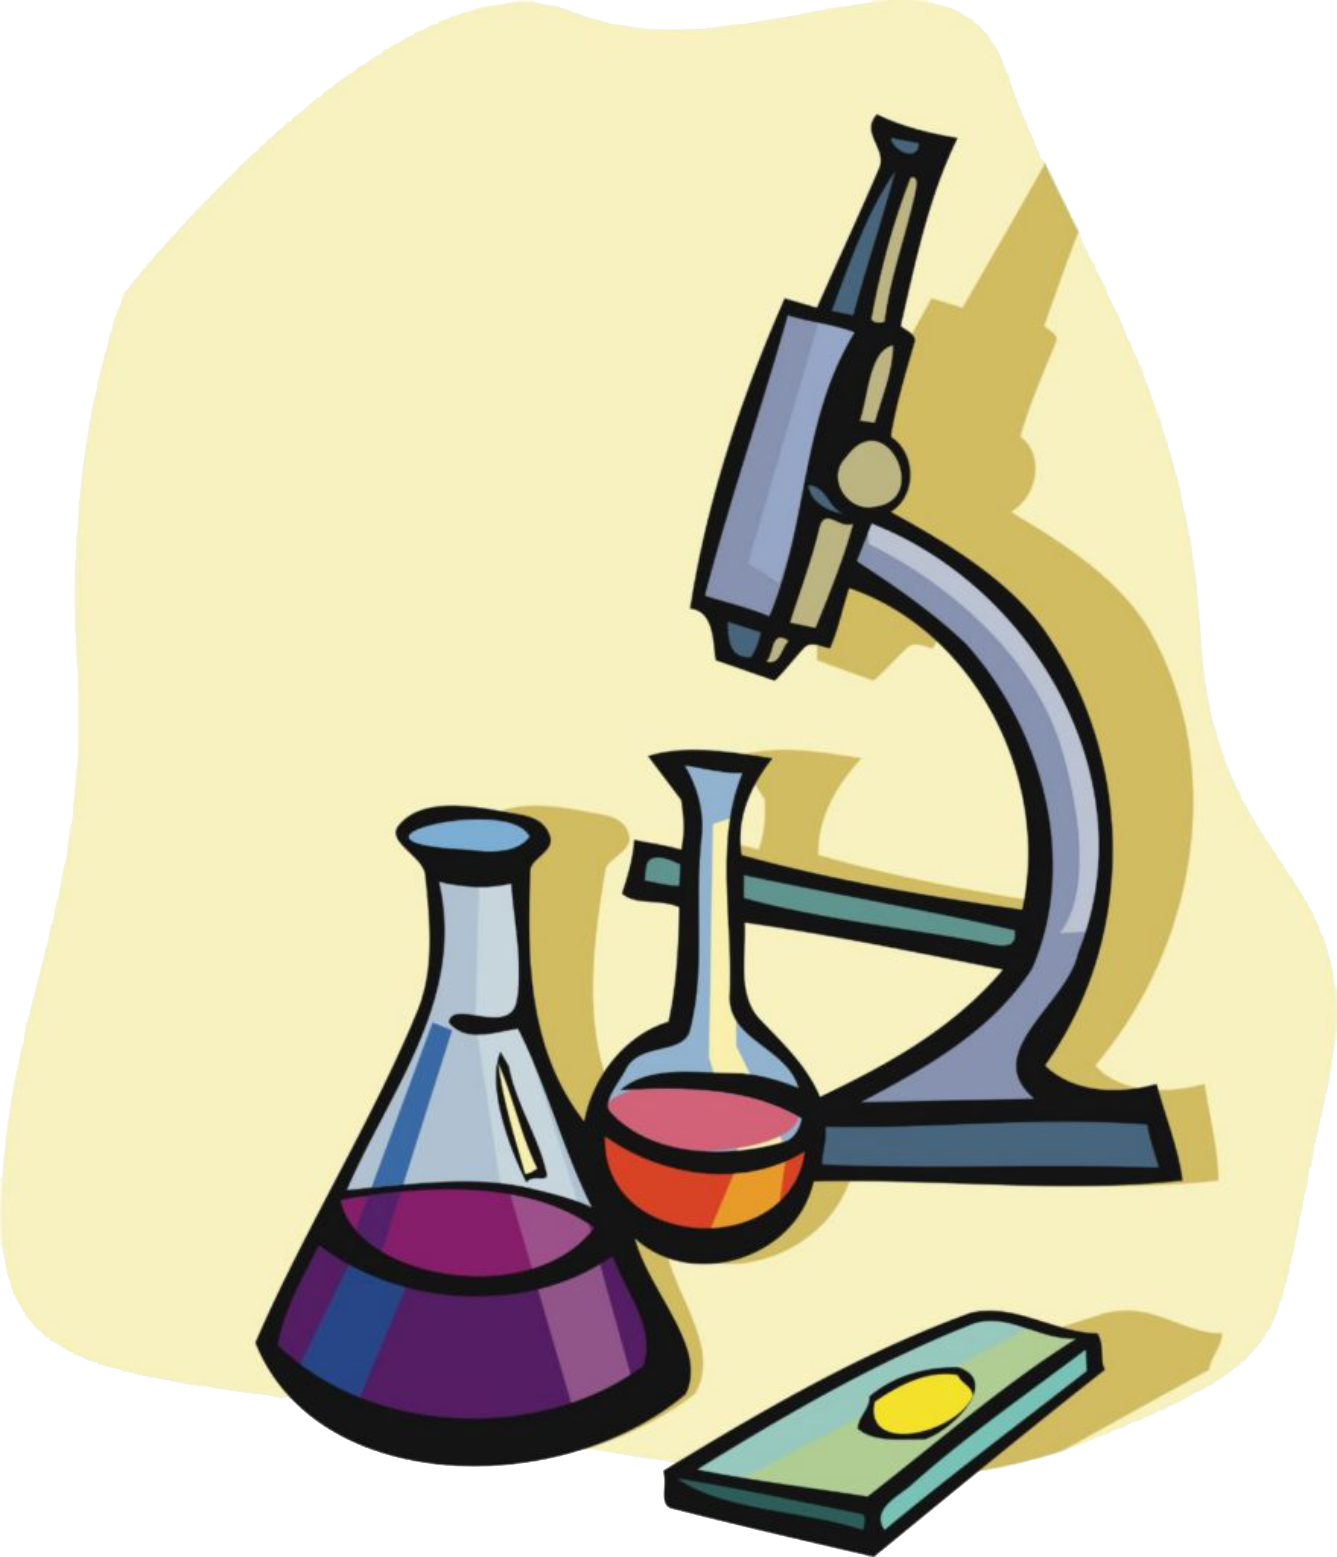 Темы по химии и биологии. Химия рисунки. Предметы по химии. Научная лаборатория рисунок. Микроскоп и колбы.